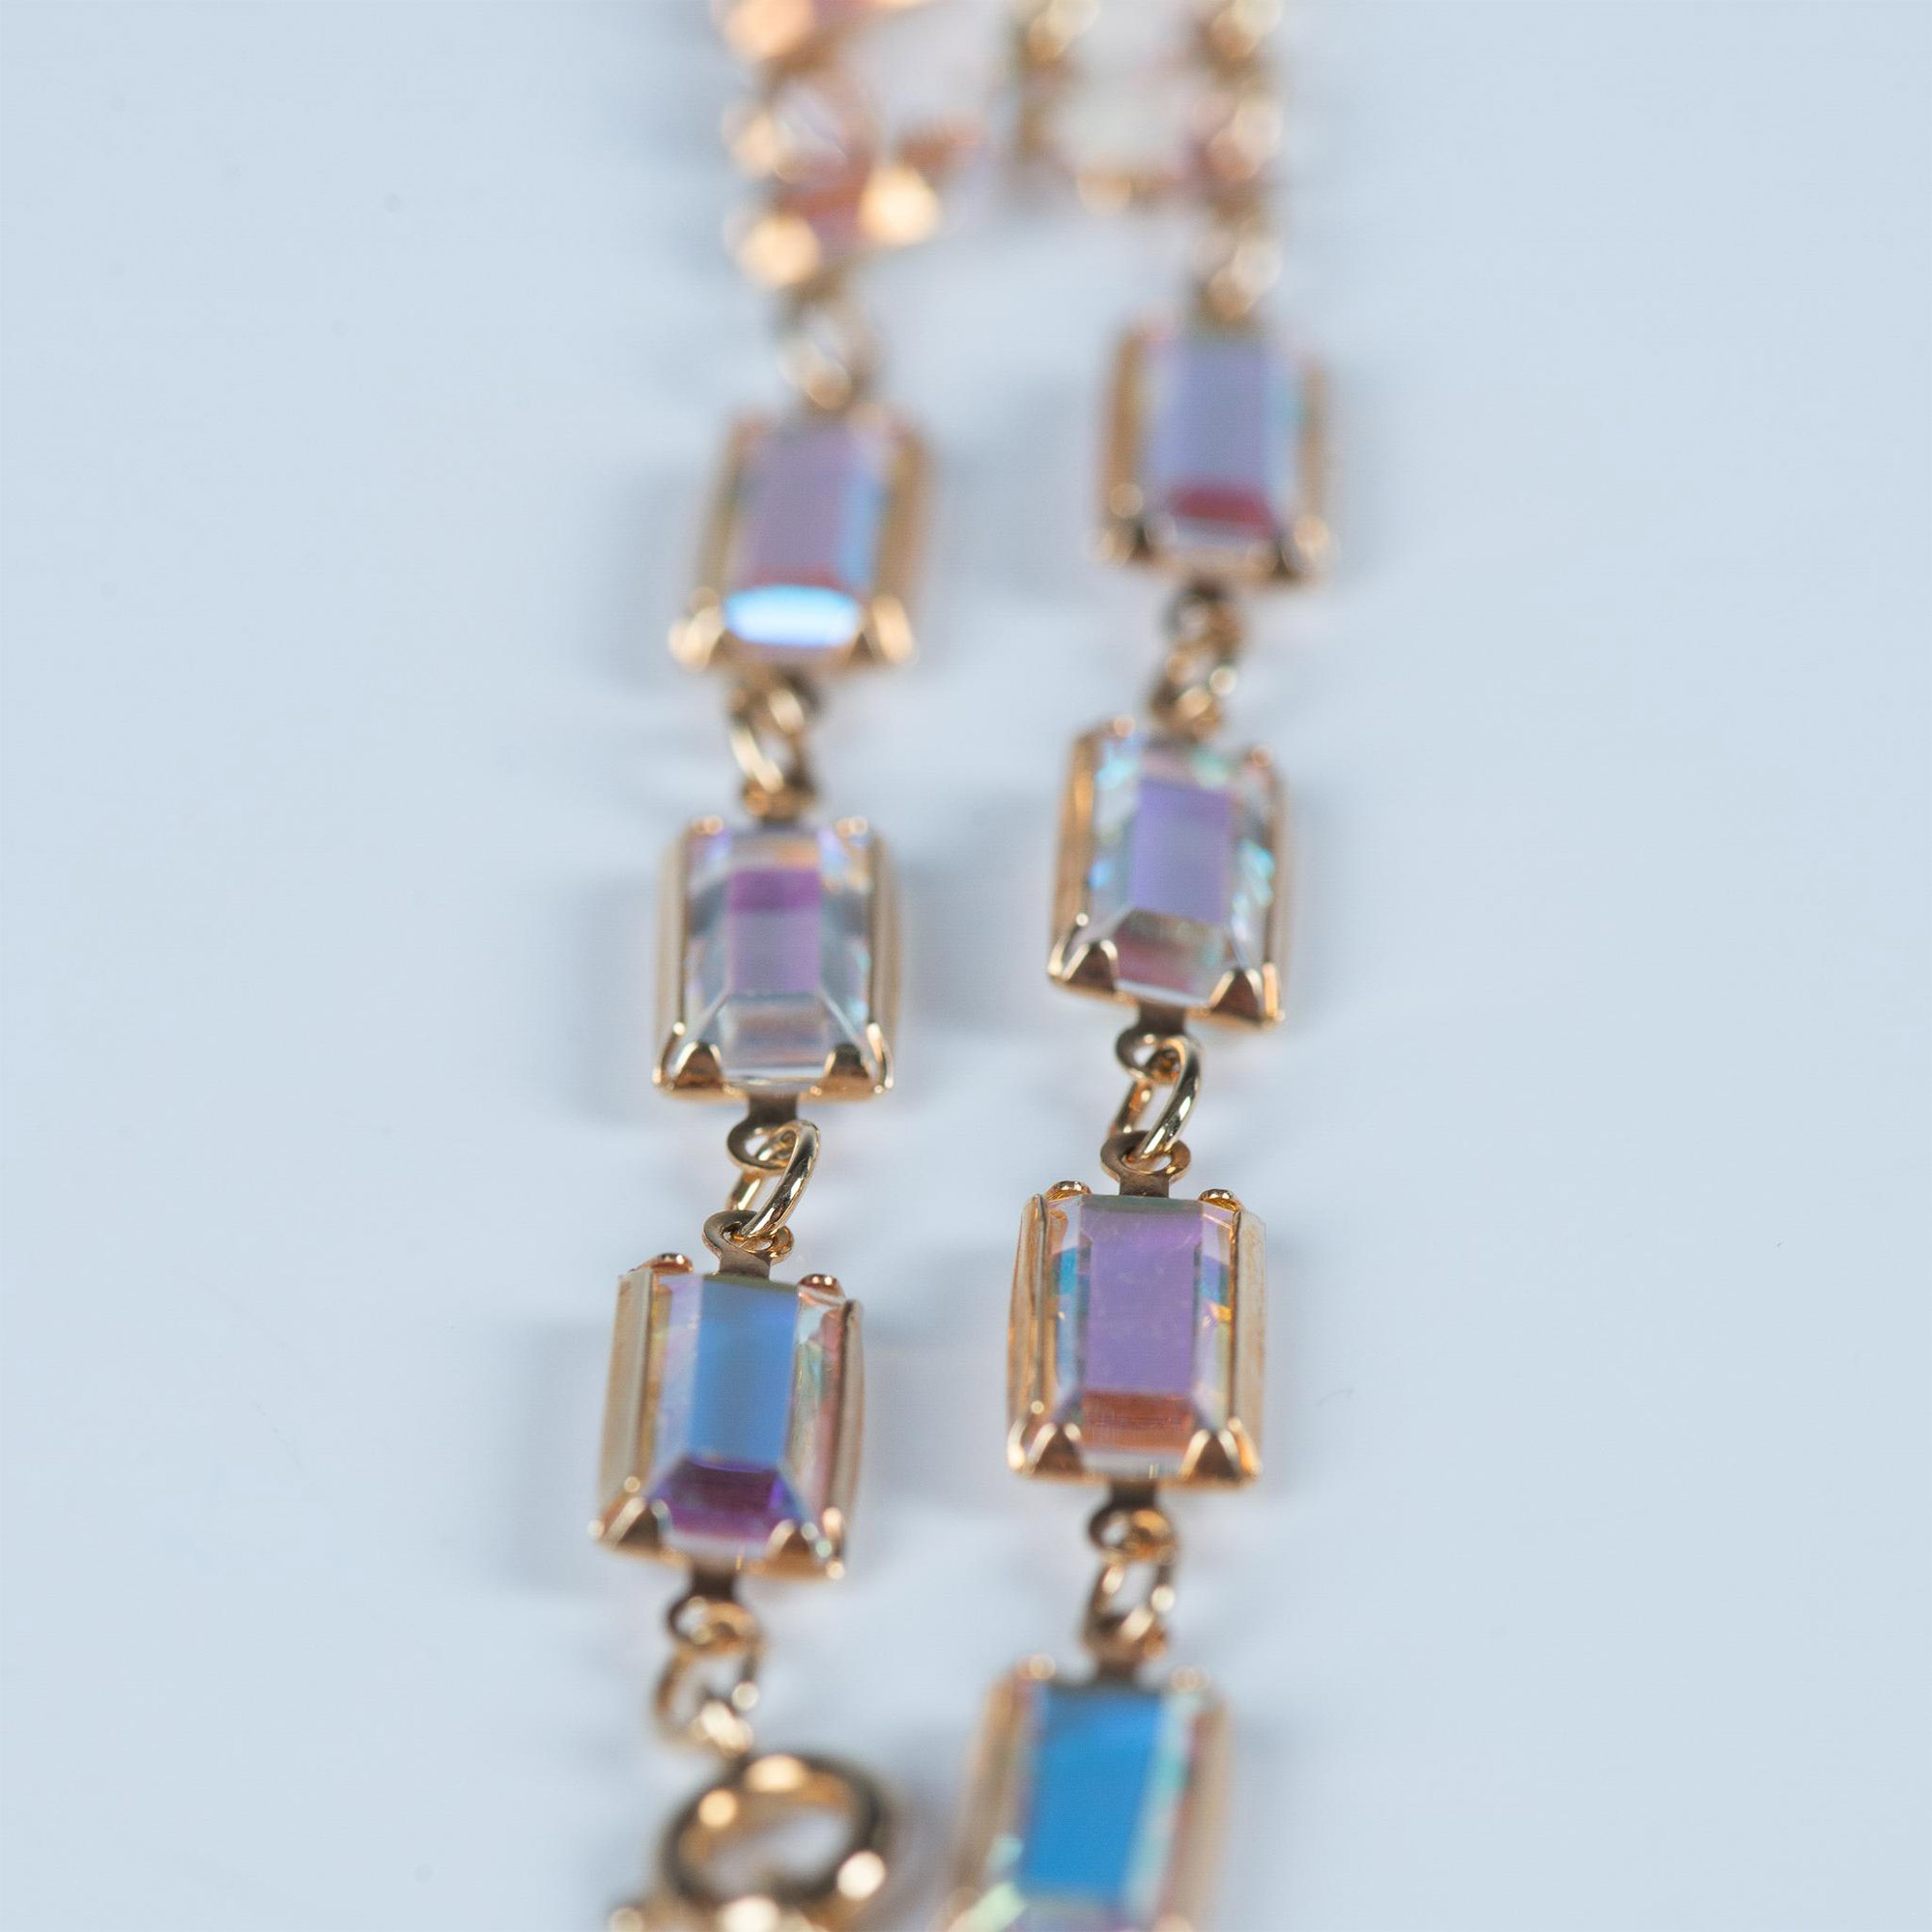 Elegant Swarovski Iridescent Crystal Gold-Plated Bracelet - Image 2 of 3